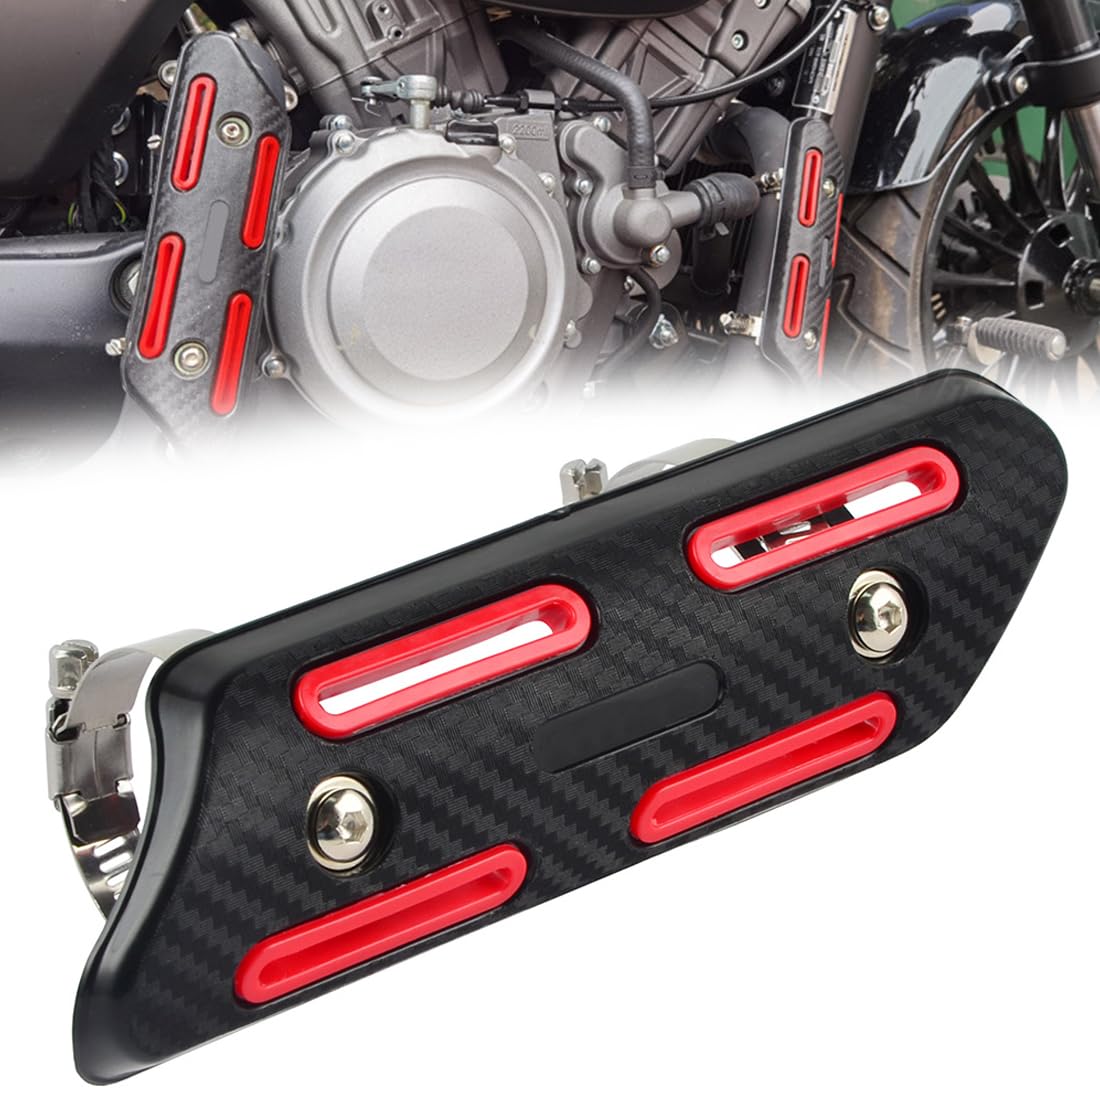 Motorrad Schalldämpfer Rohr Hitzeschild Motorcycle Exhaust Protector Pipe Heat Shield Retrofit Heat Shield Insulation Cover von Wailicop